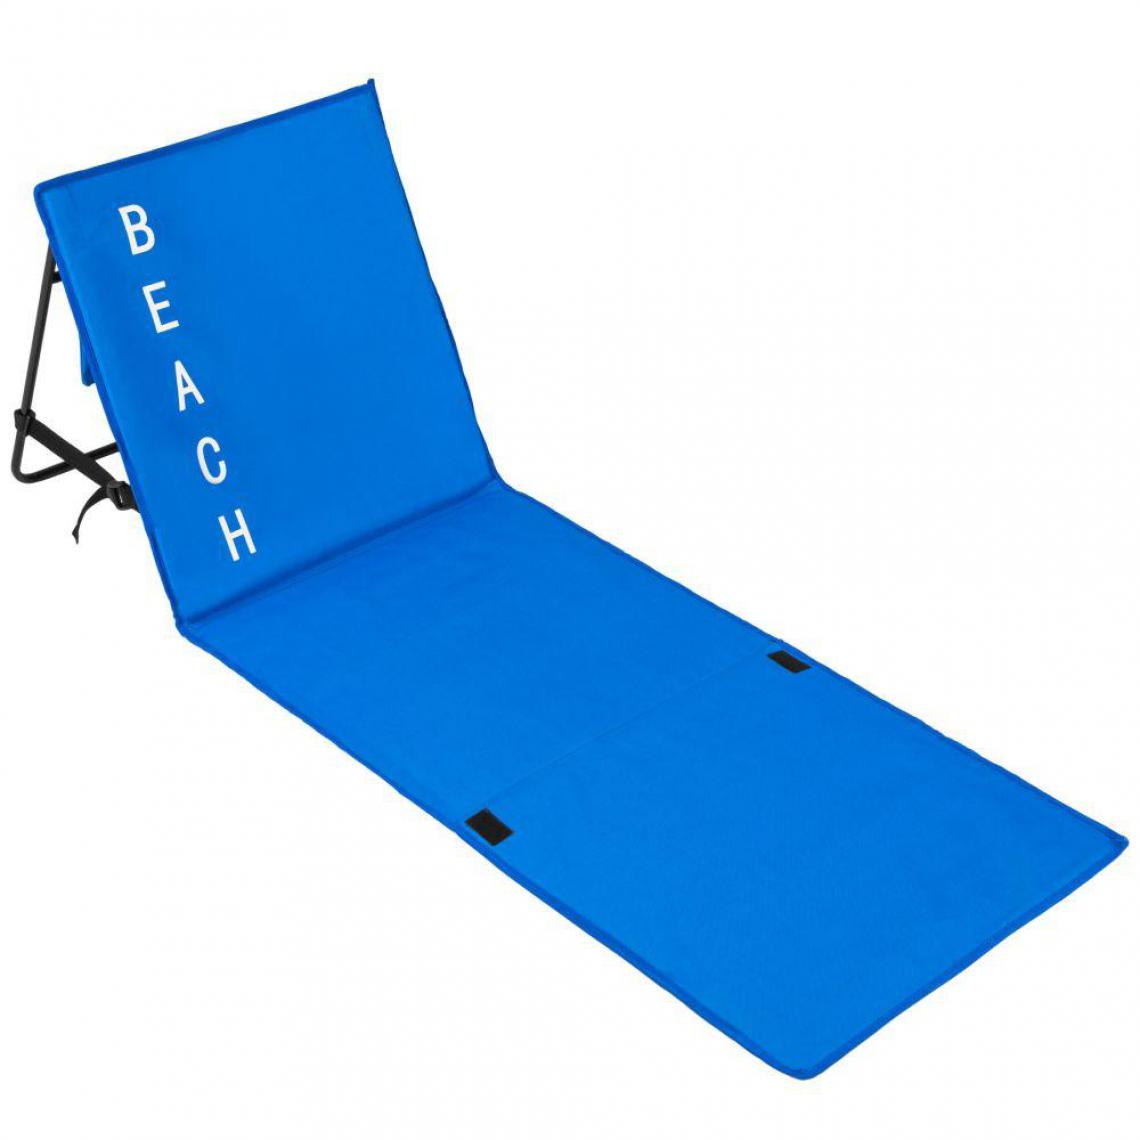 Helloshop26 - Transat bain de soleil meuble jardin de plage bleu 2208106 - Transats, chaises longues